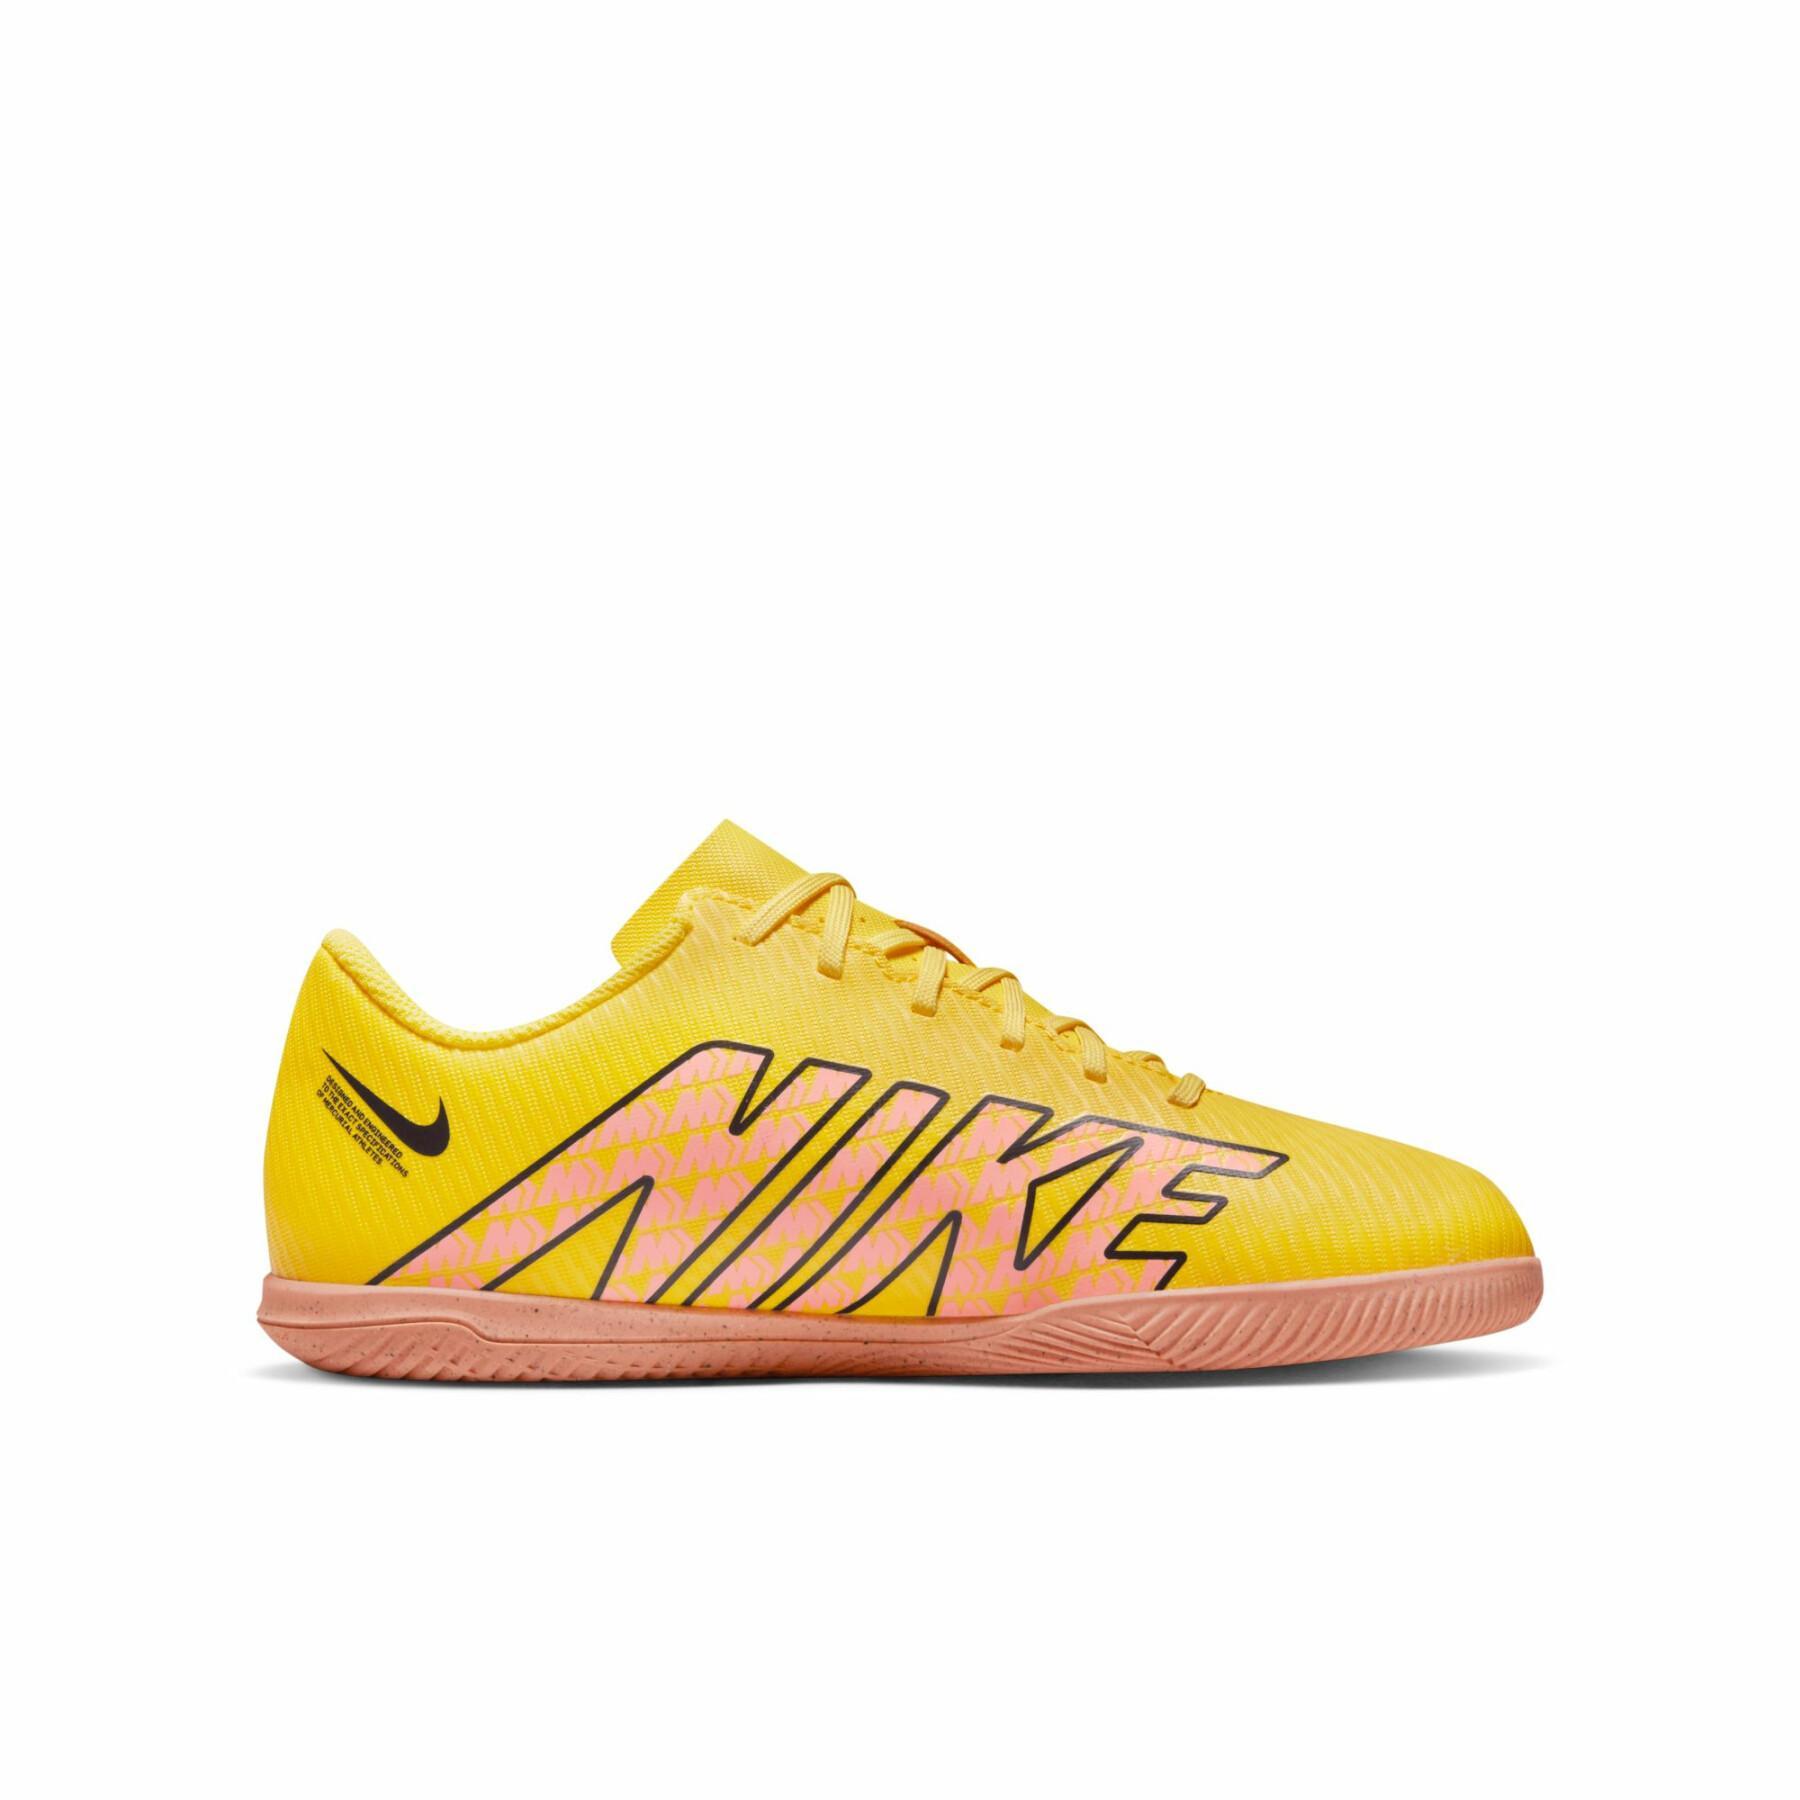 Sapatos de futebol para crianças Nike Mercurial Vapor 15 Club IC - Lucent Pack